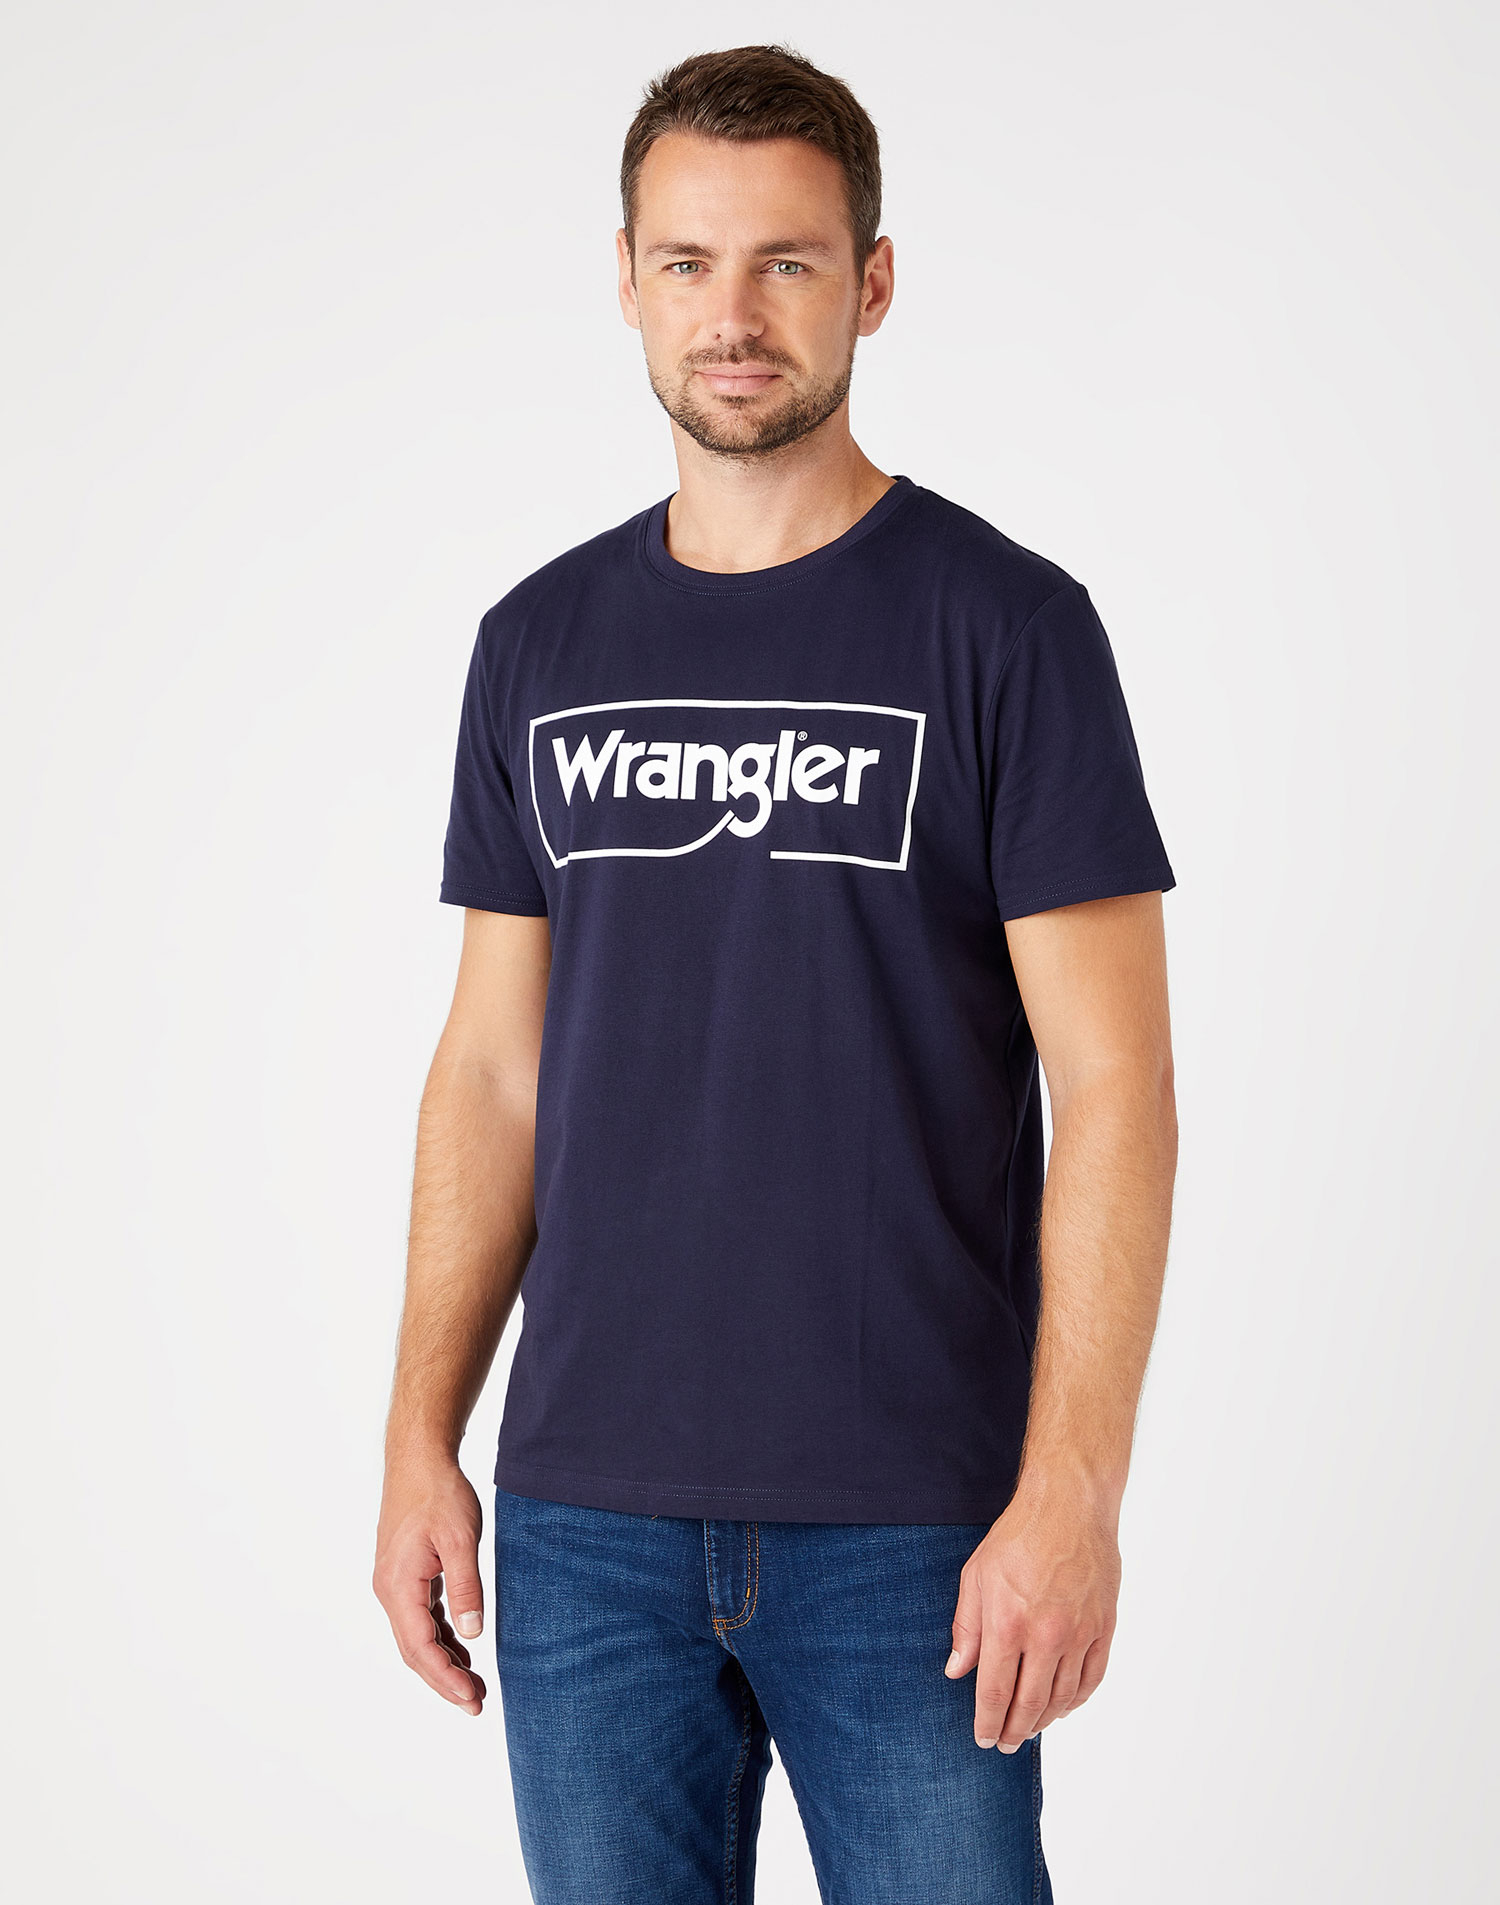 Wrangler samarreta d'home de m/c W7H3D3114 blau marí